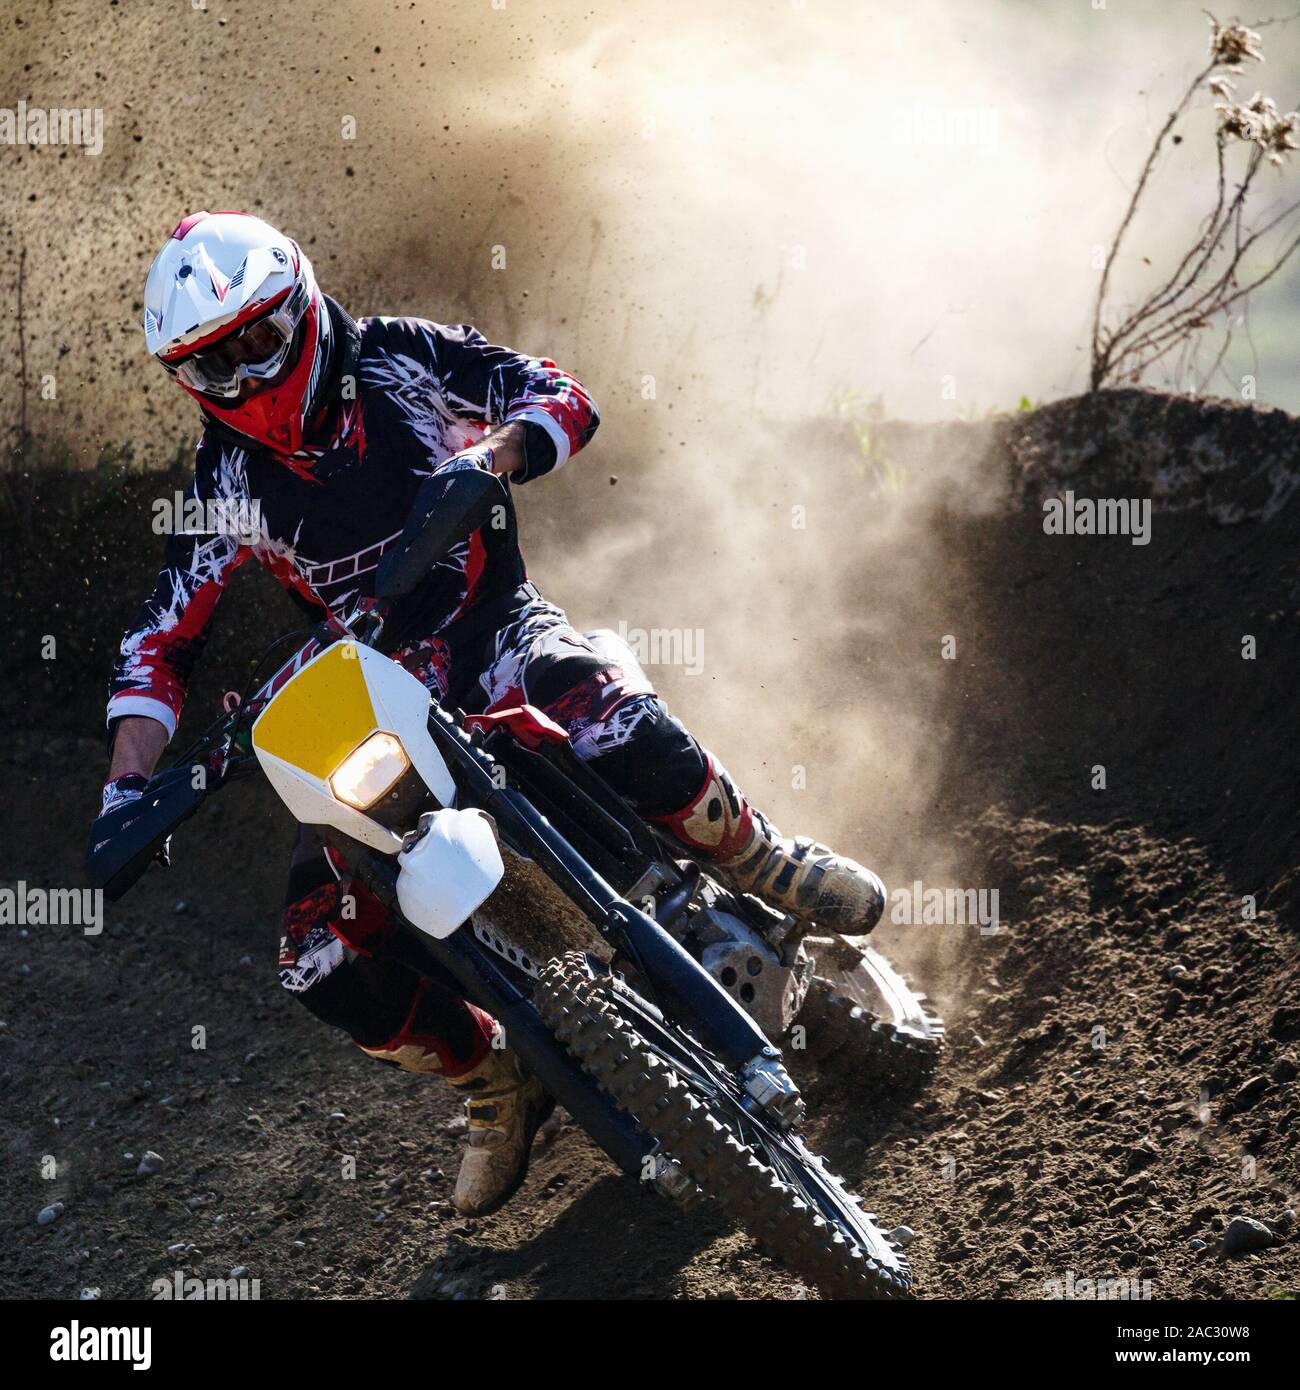 moto cross in action in dirt road Stock Photo